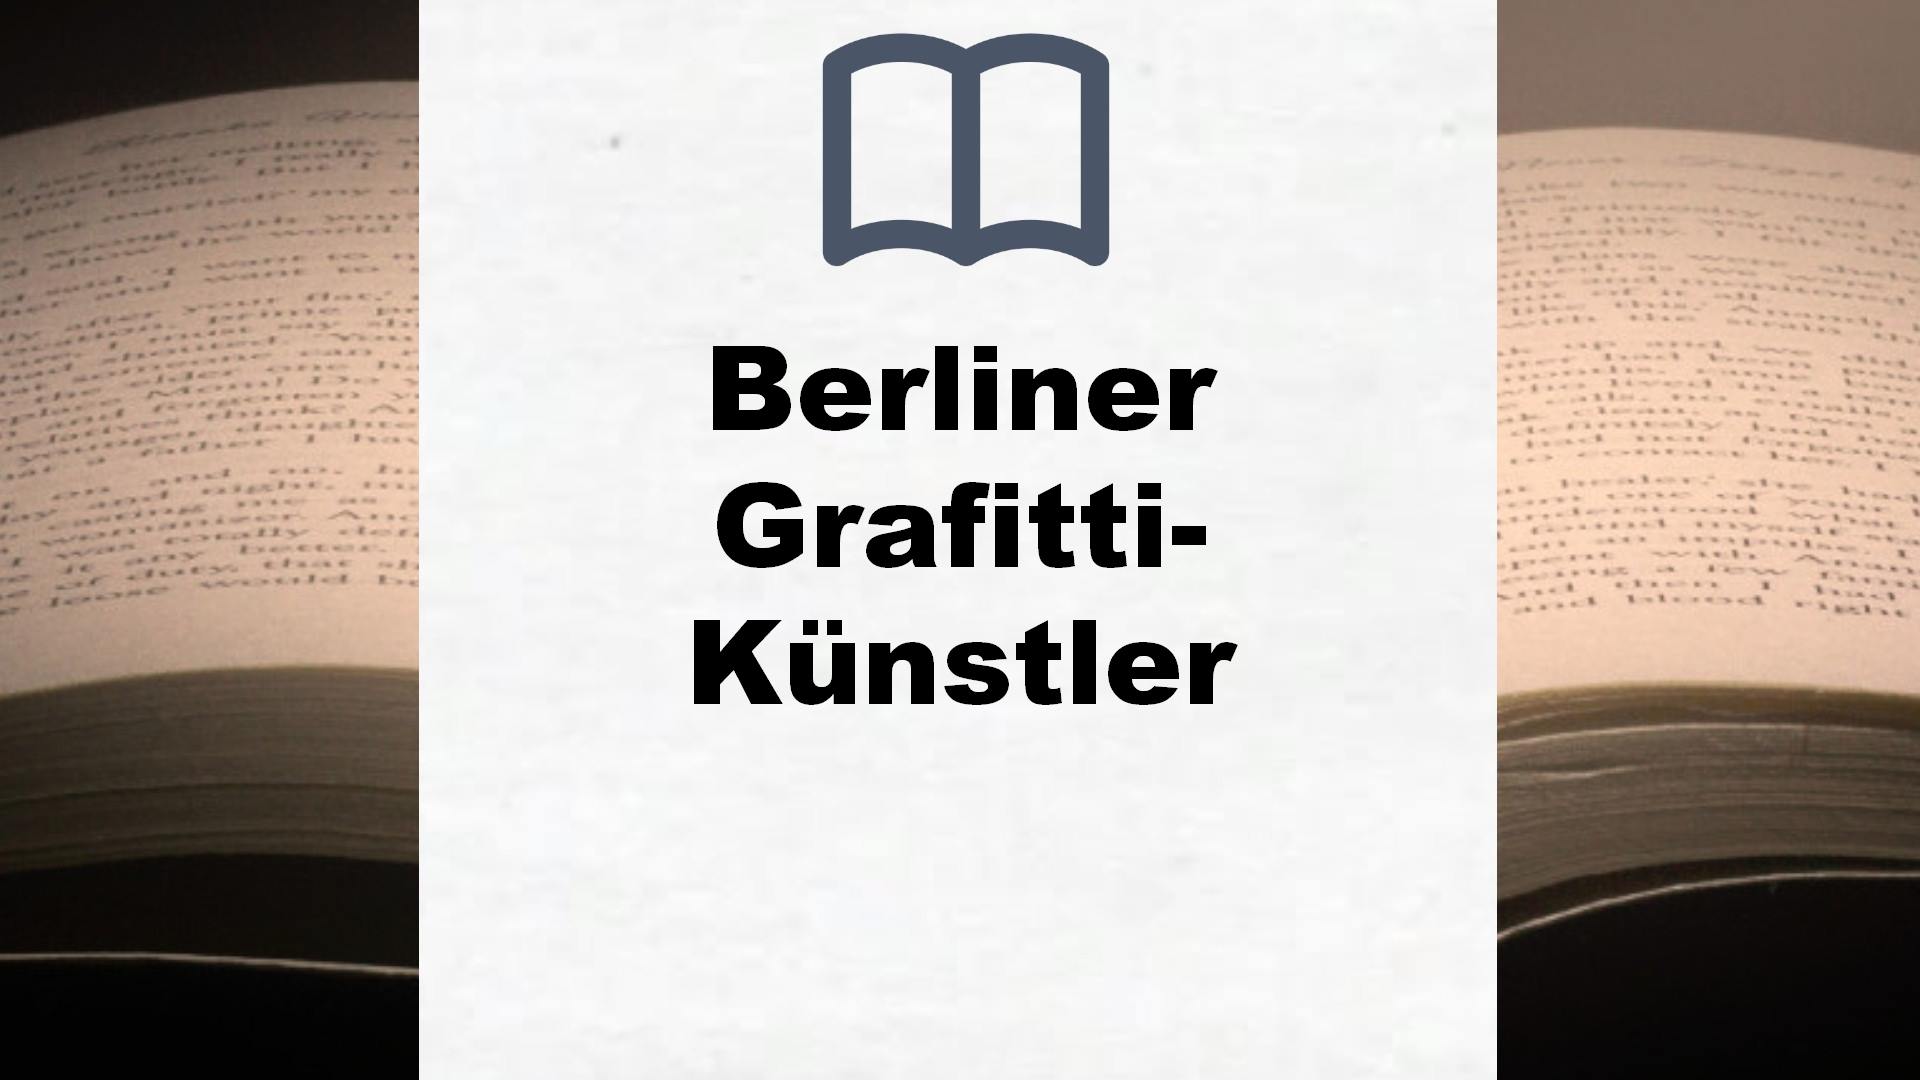 Bücher über Berliner Grafitti-Künstler